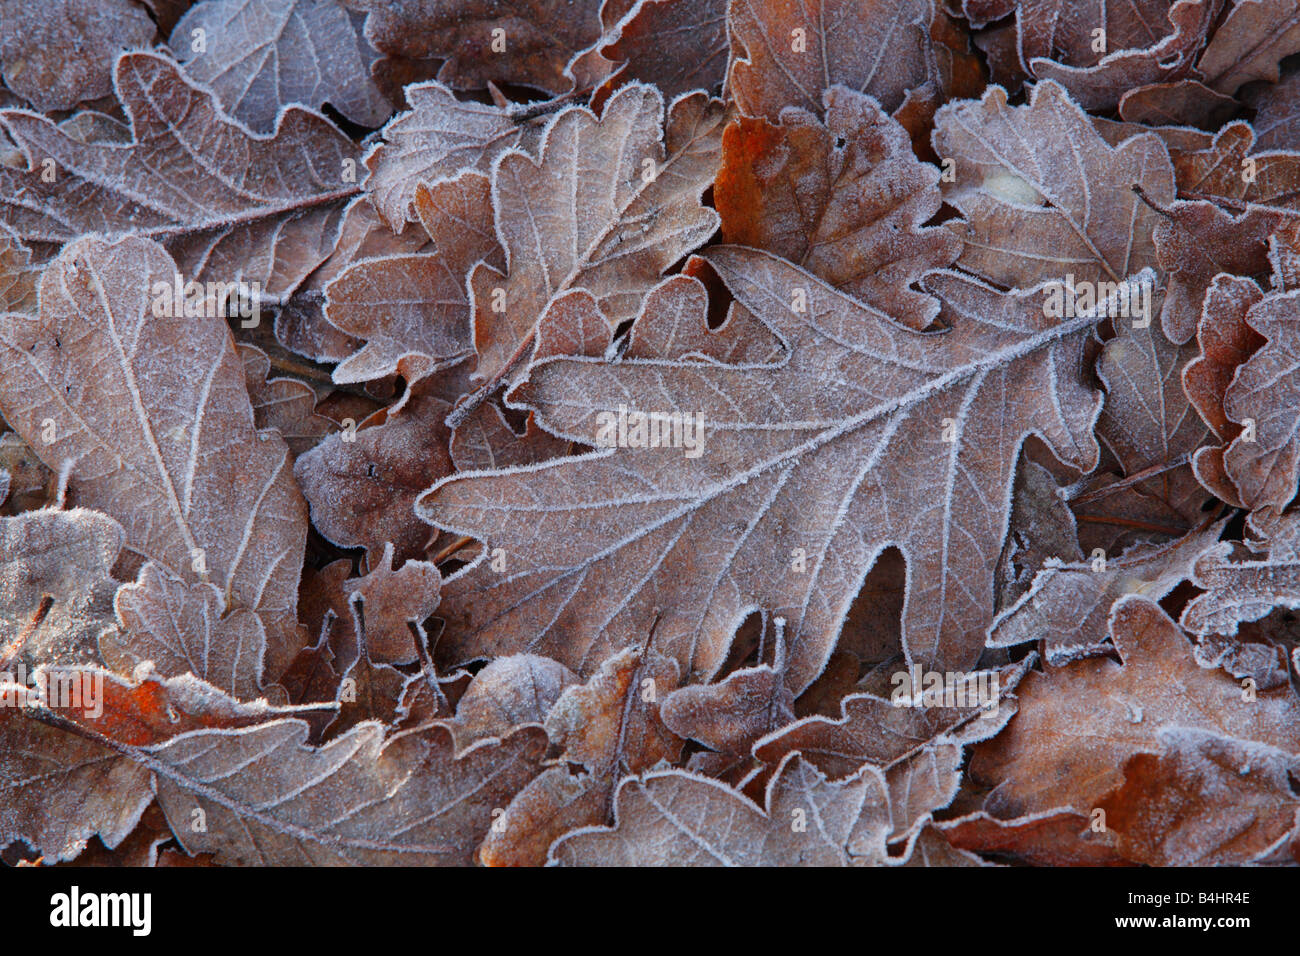 Givre sur les feuilles mortes de chêne sessile (Quercus petraea). Powys, Pays de Galles, Royaume-Uni. Banque D'Images